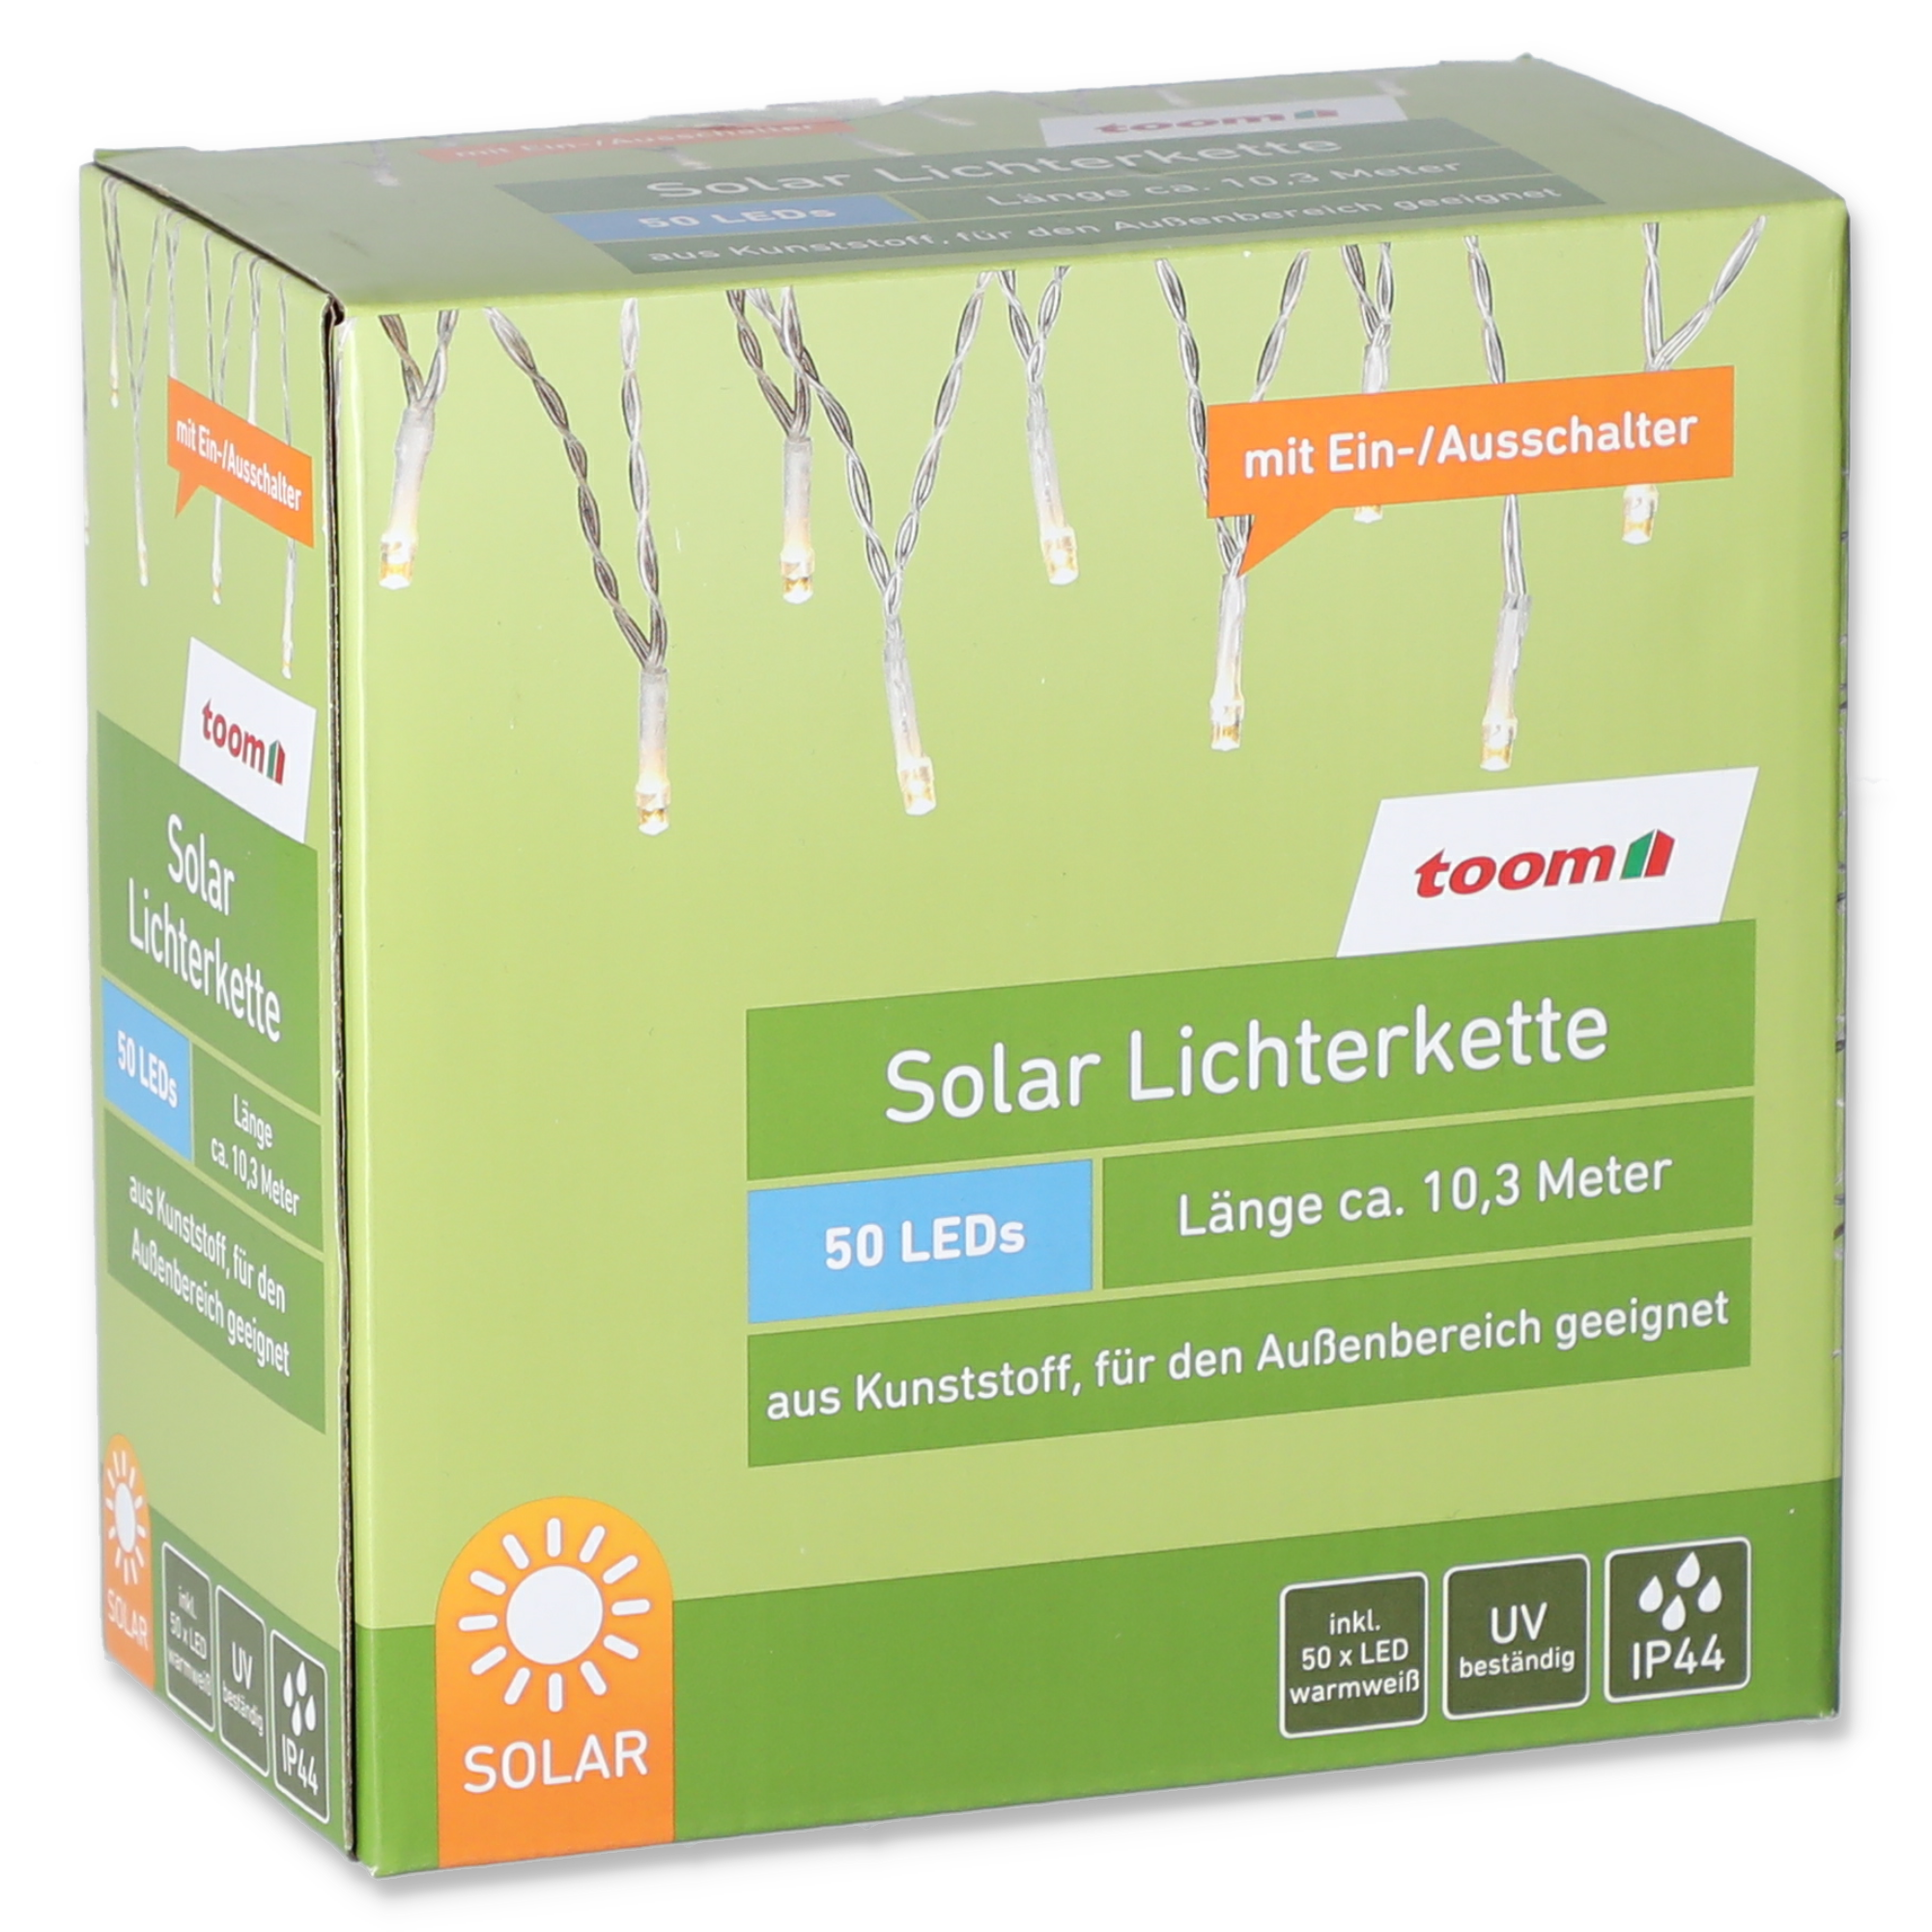 Solar-Lichterkette 50 LEDs 10,3 m + product picture